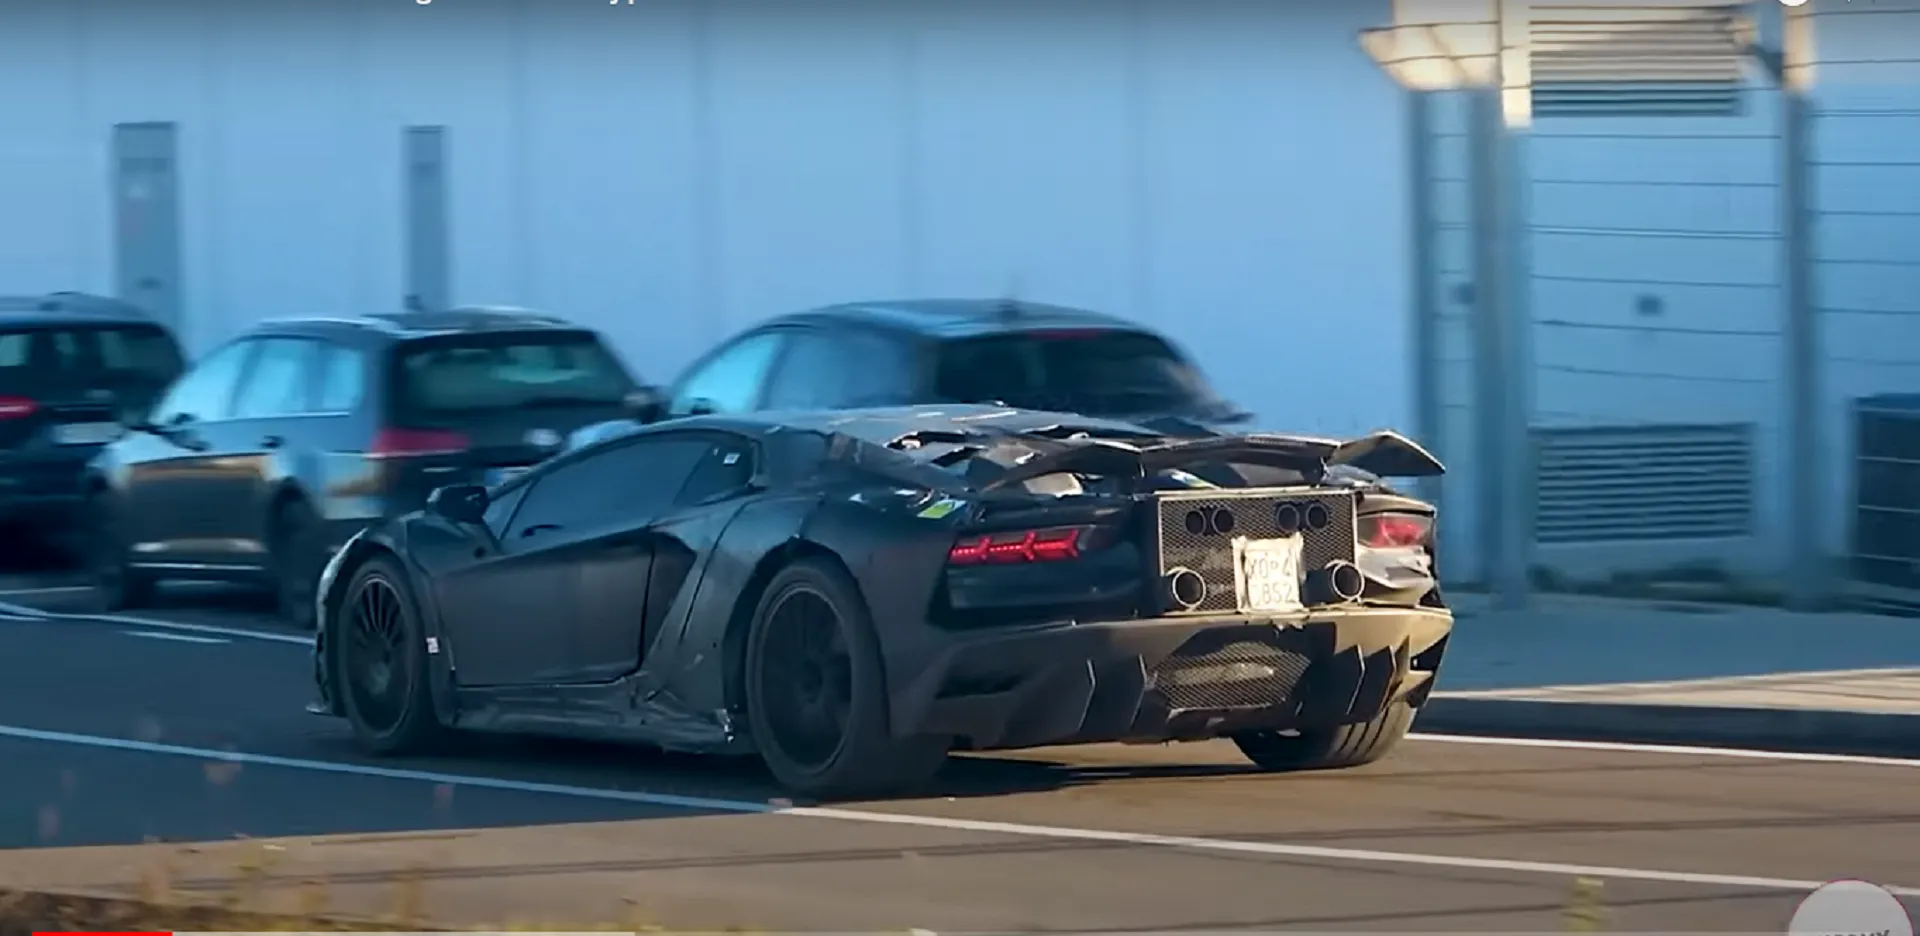 El sustituto del Lamborghini Aventador se ha dejado ver en los alrededores de la fábrica